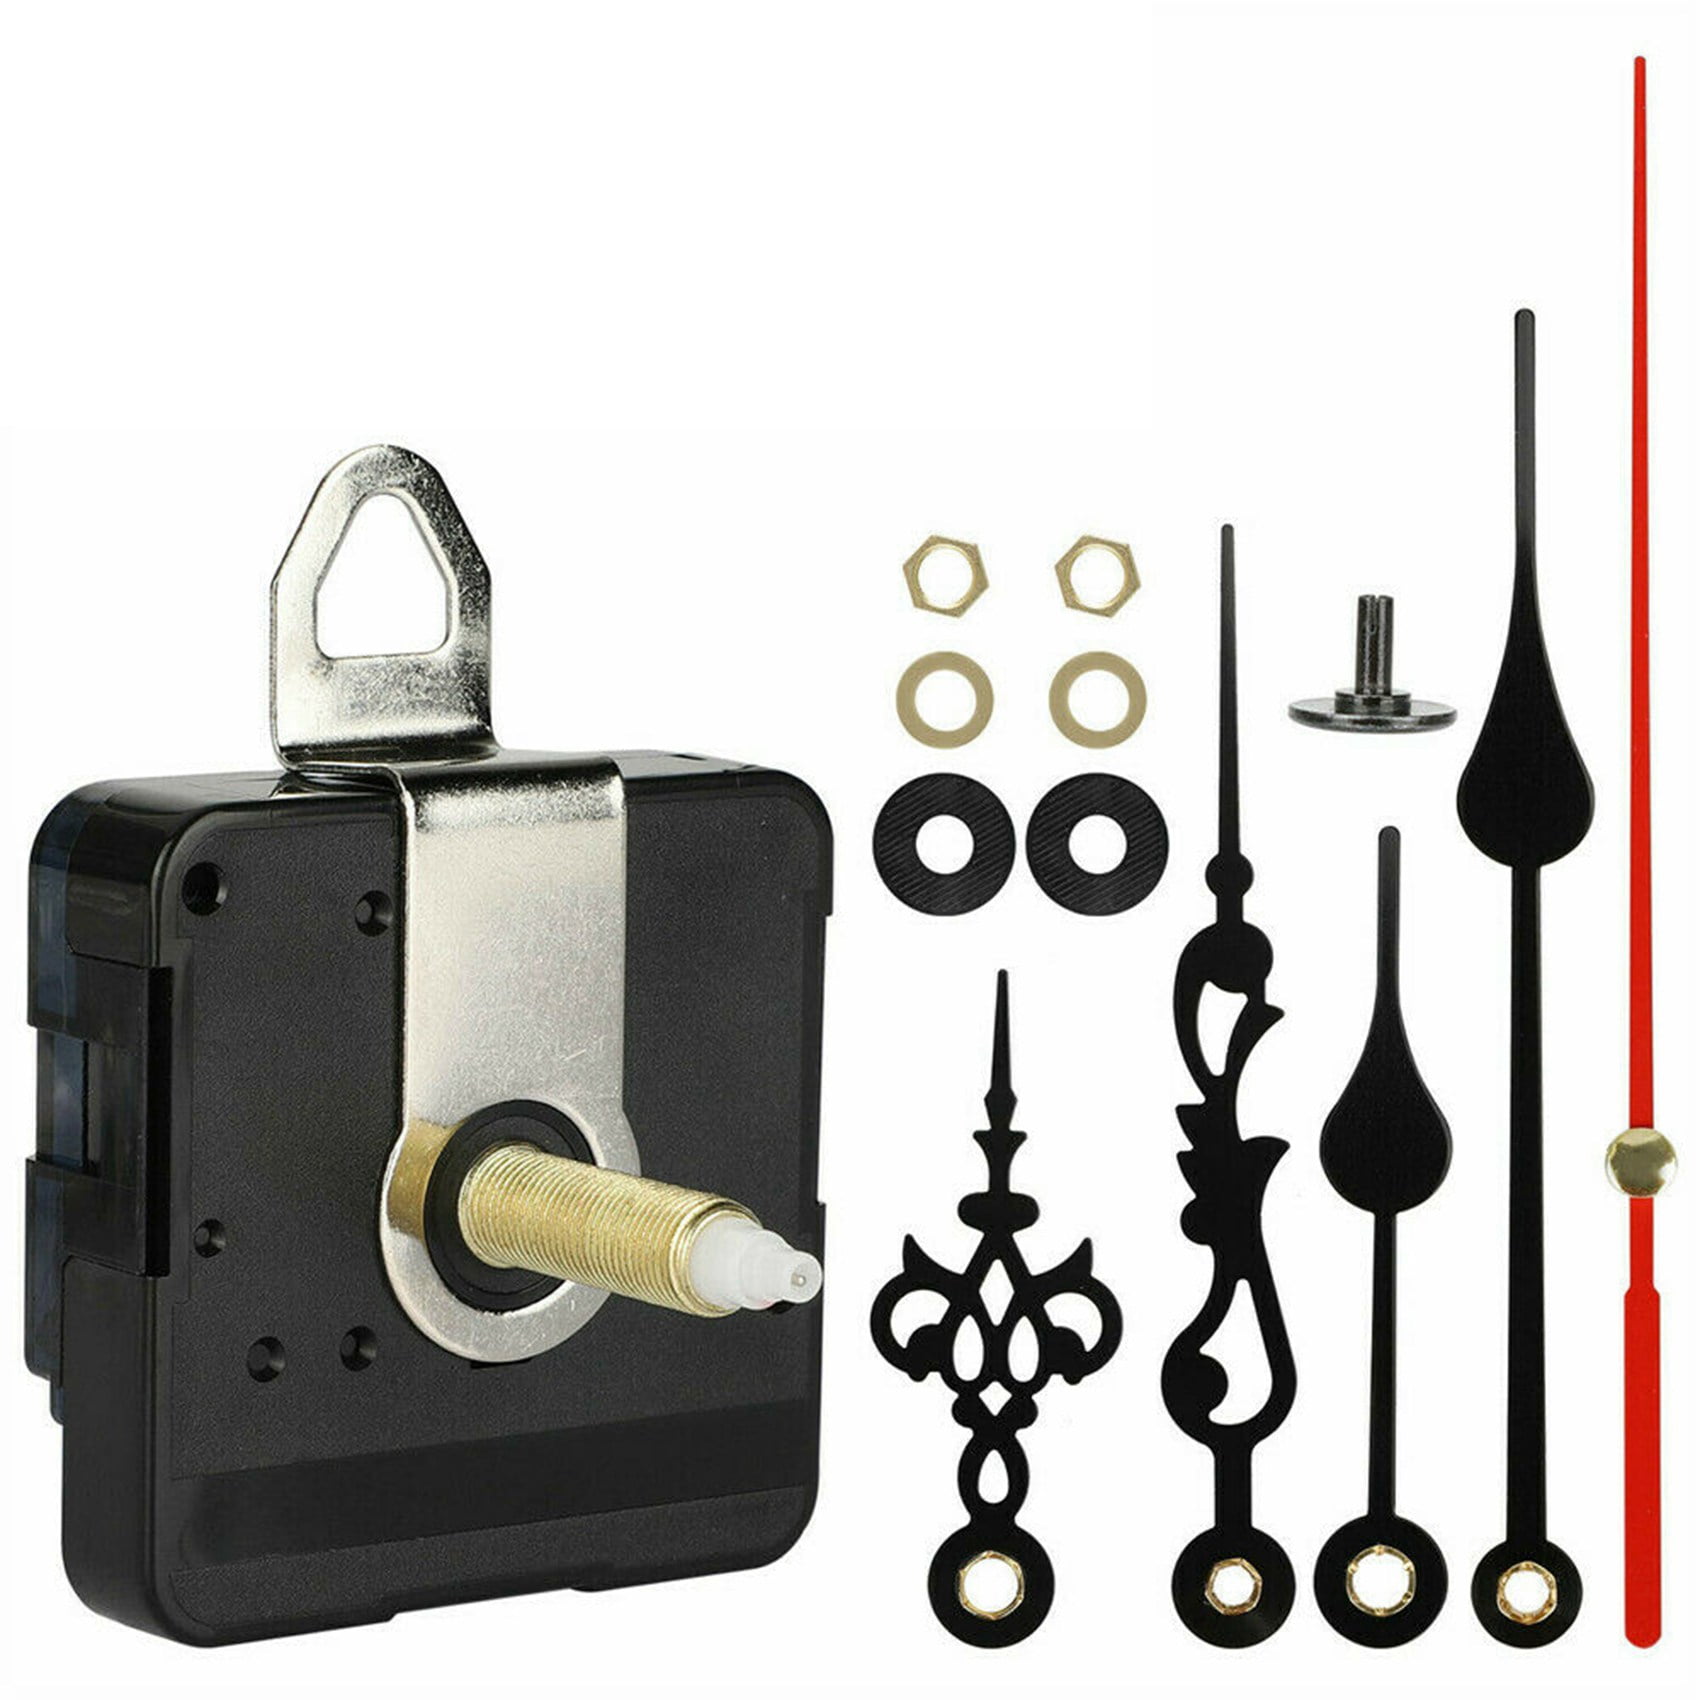 DIY Wall Quartz Clock Gold Hands Movement Mechanism Replacement Tool Parts Set ~ 